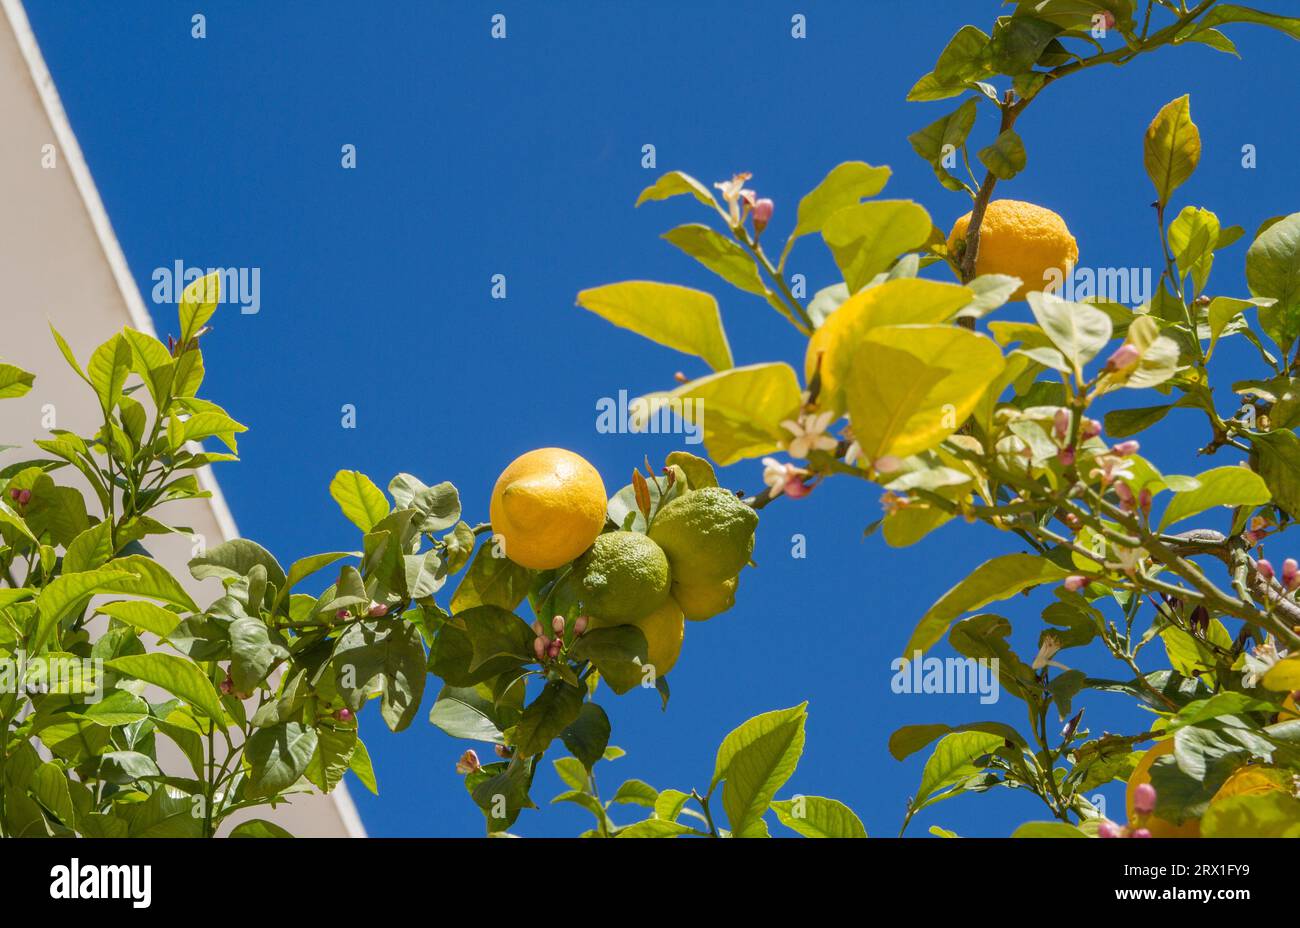 Frutti di limone gialli e verdi maturi sull'albero con fiori, foglie e cielo blu (spazio copia), isola di Ibiza, Spagna Foto Stock